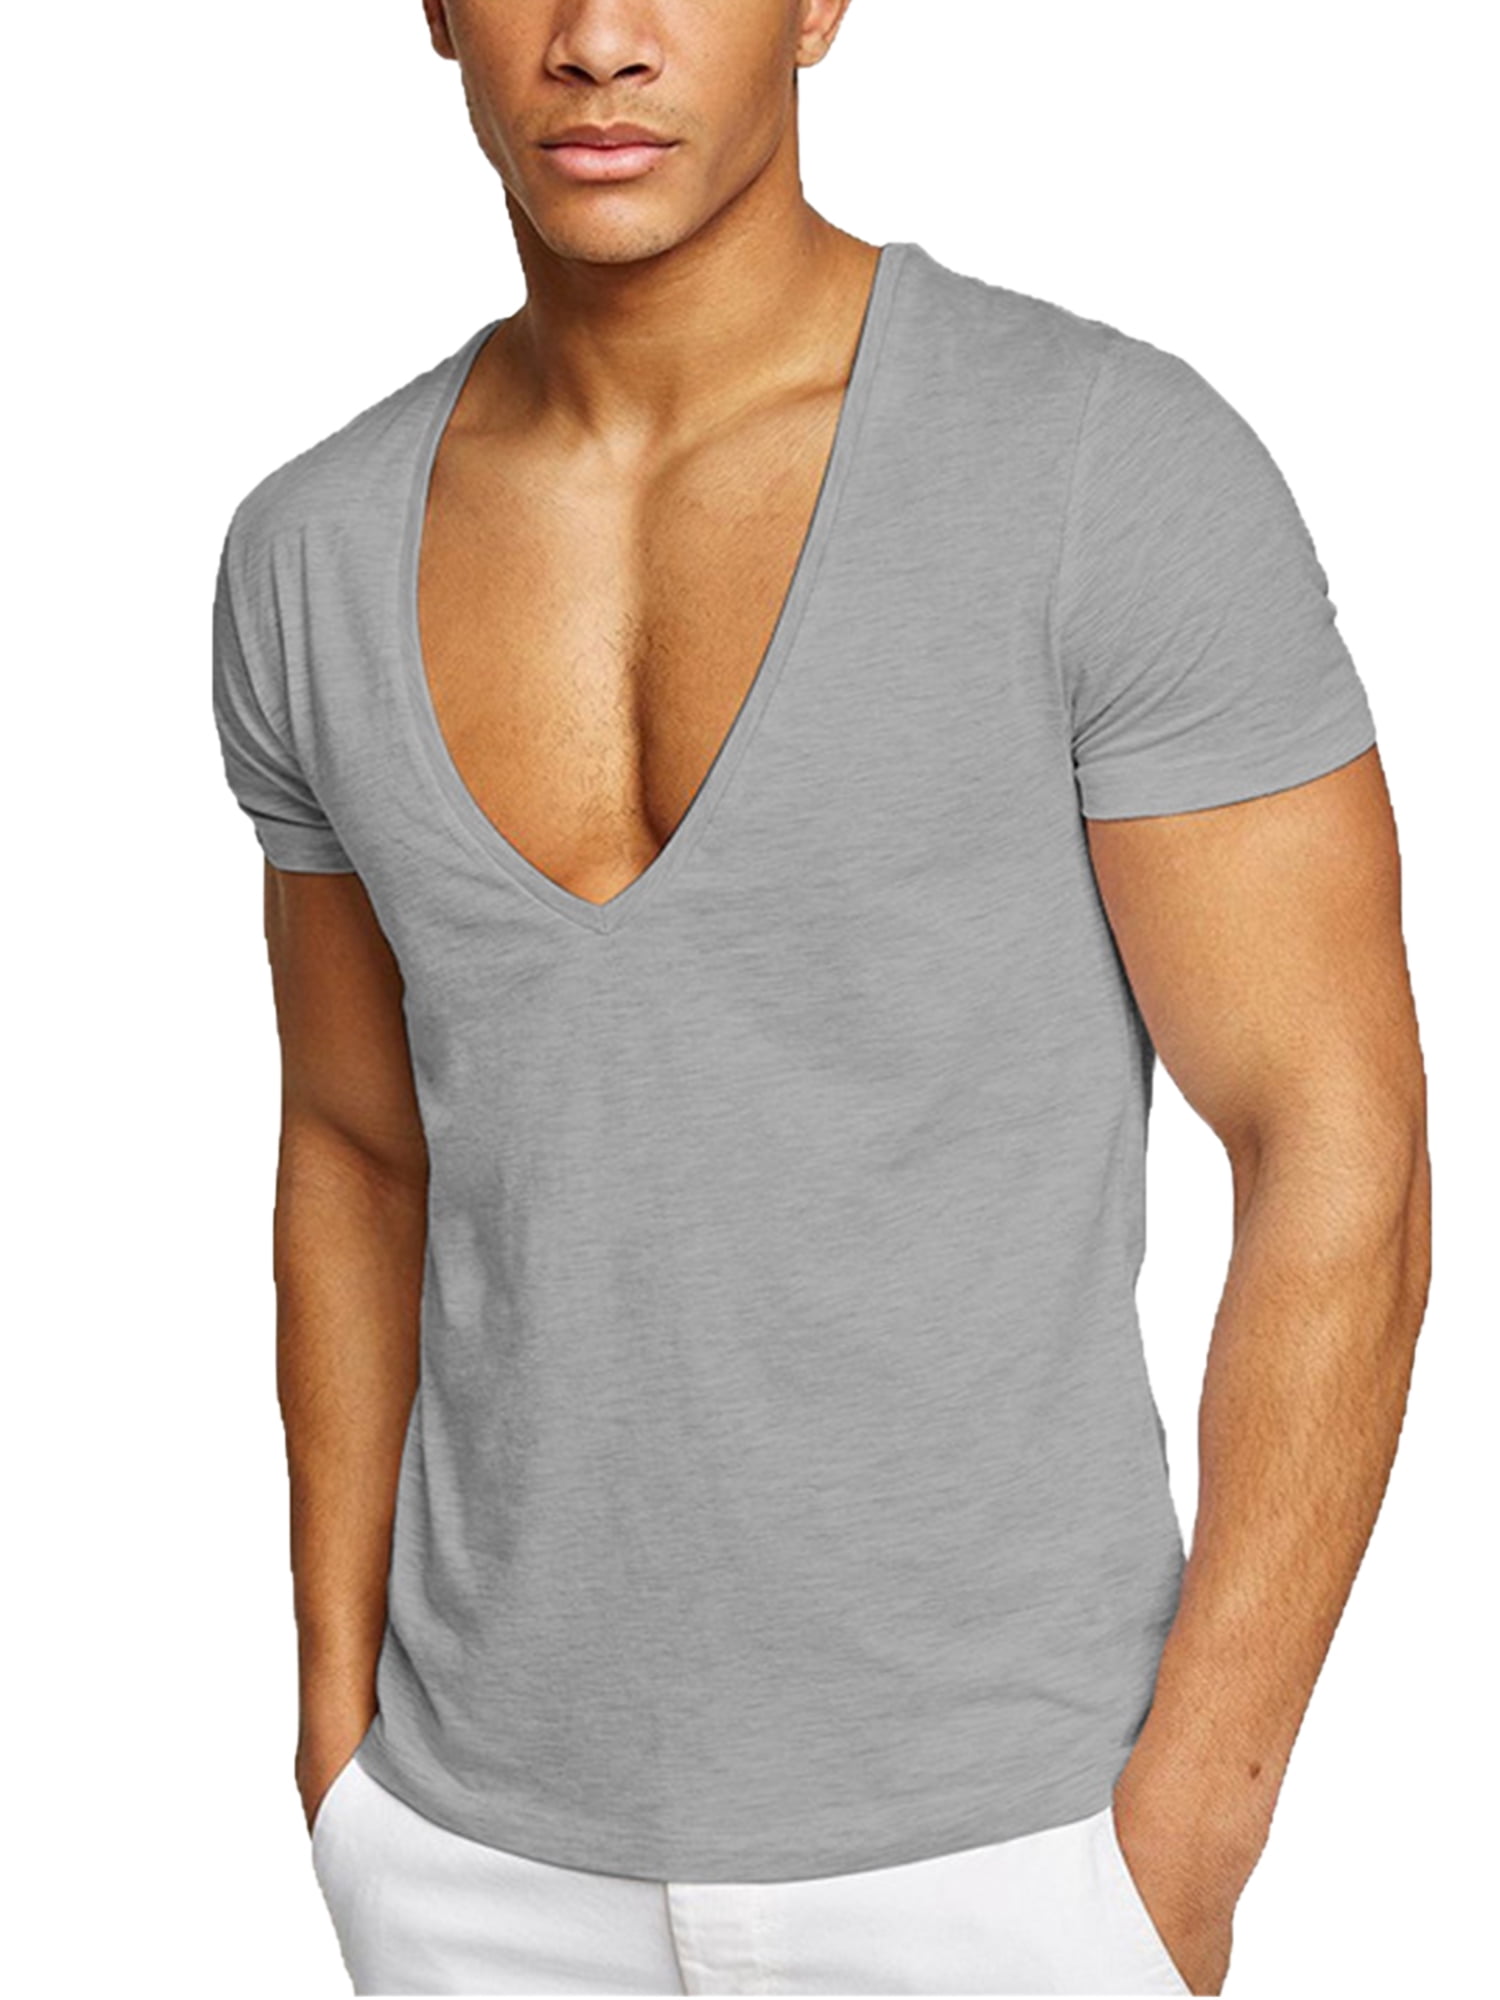 Men Summer Short Sleeve Low Cut V Neck Tee Shirt Deep V Neck T Shirt Top